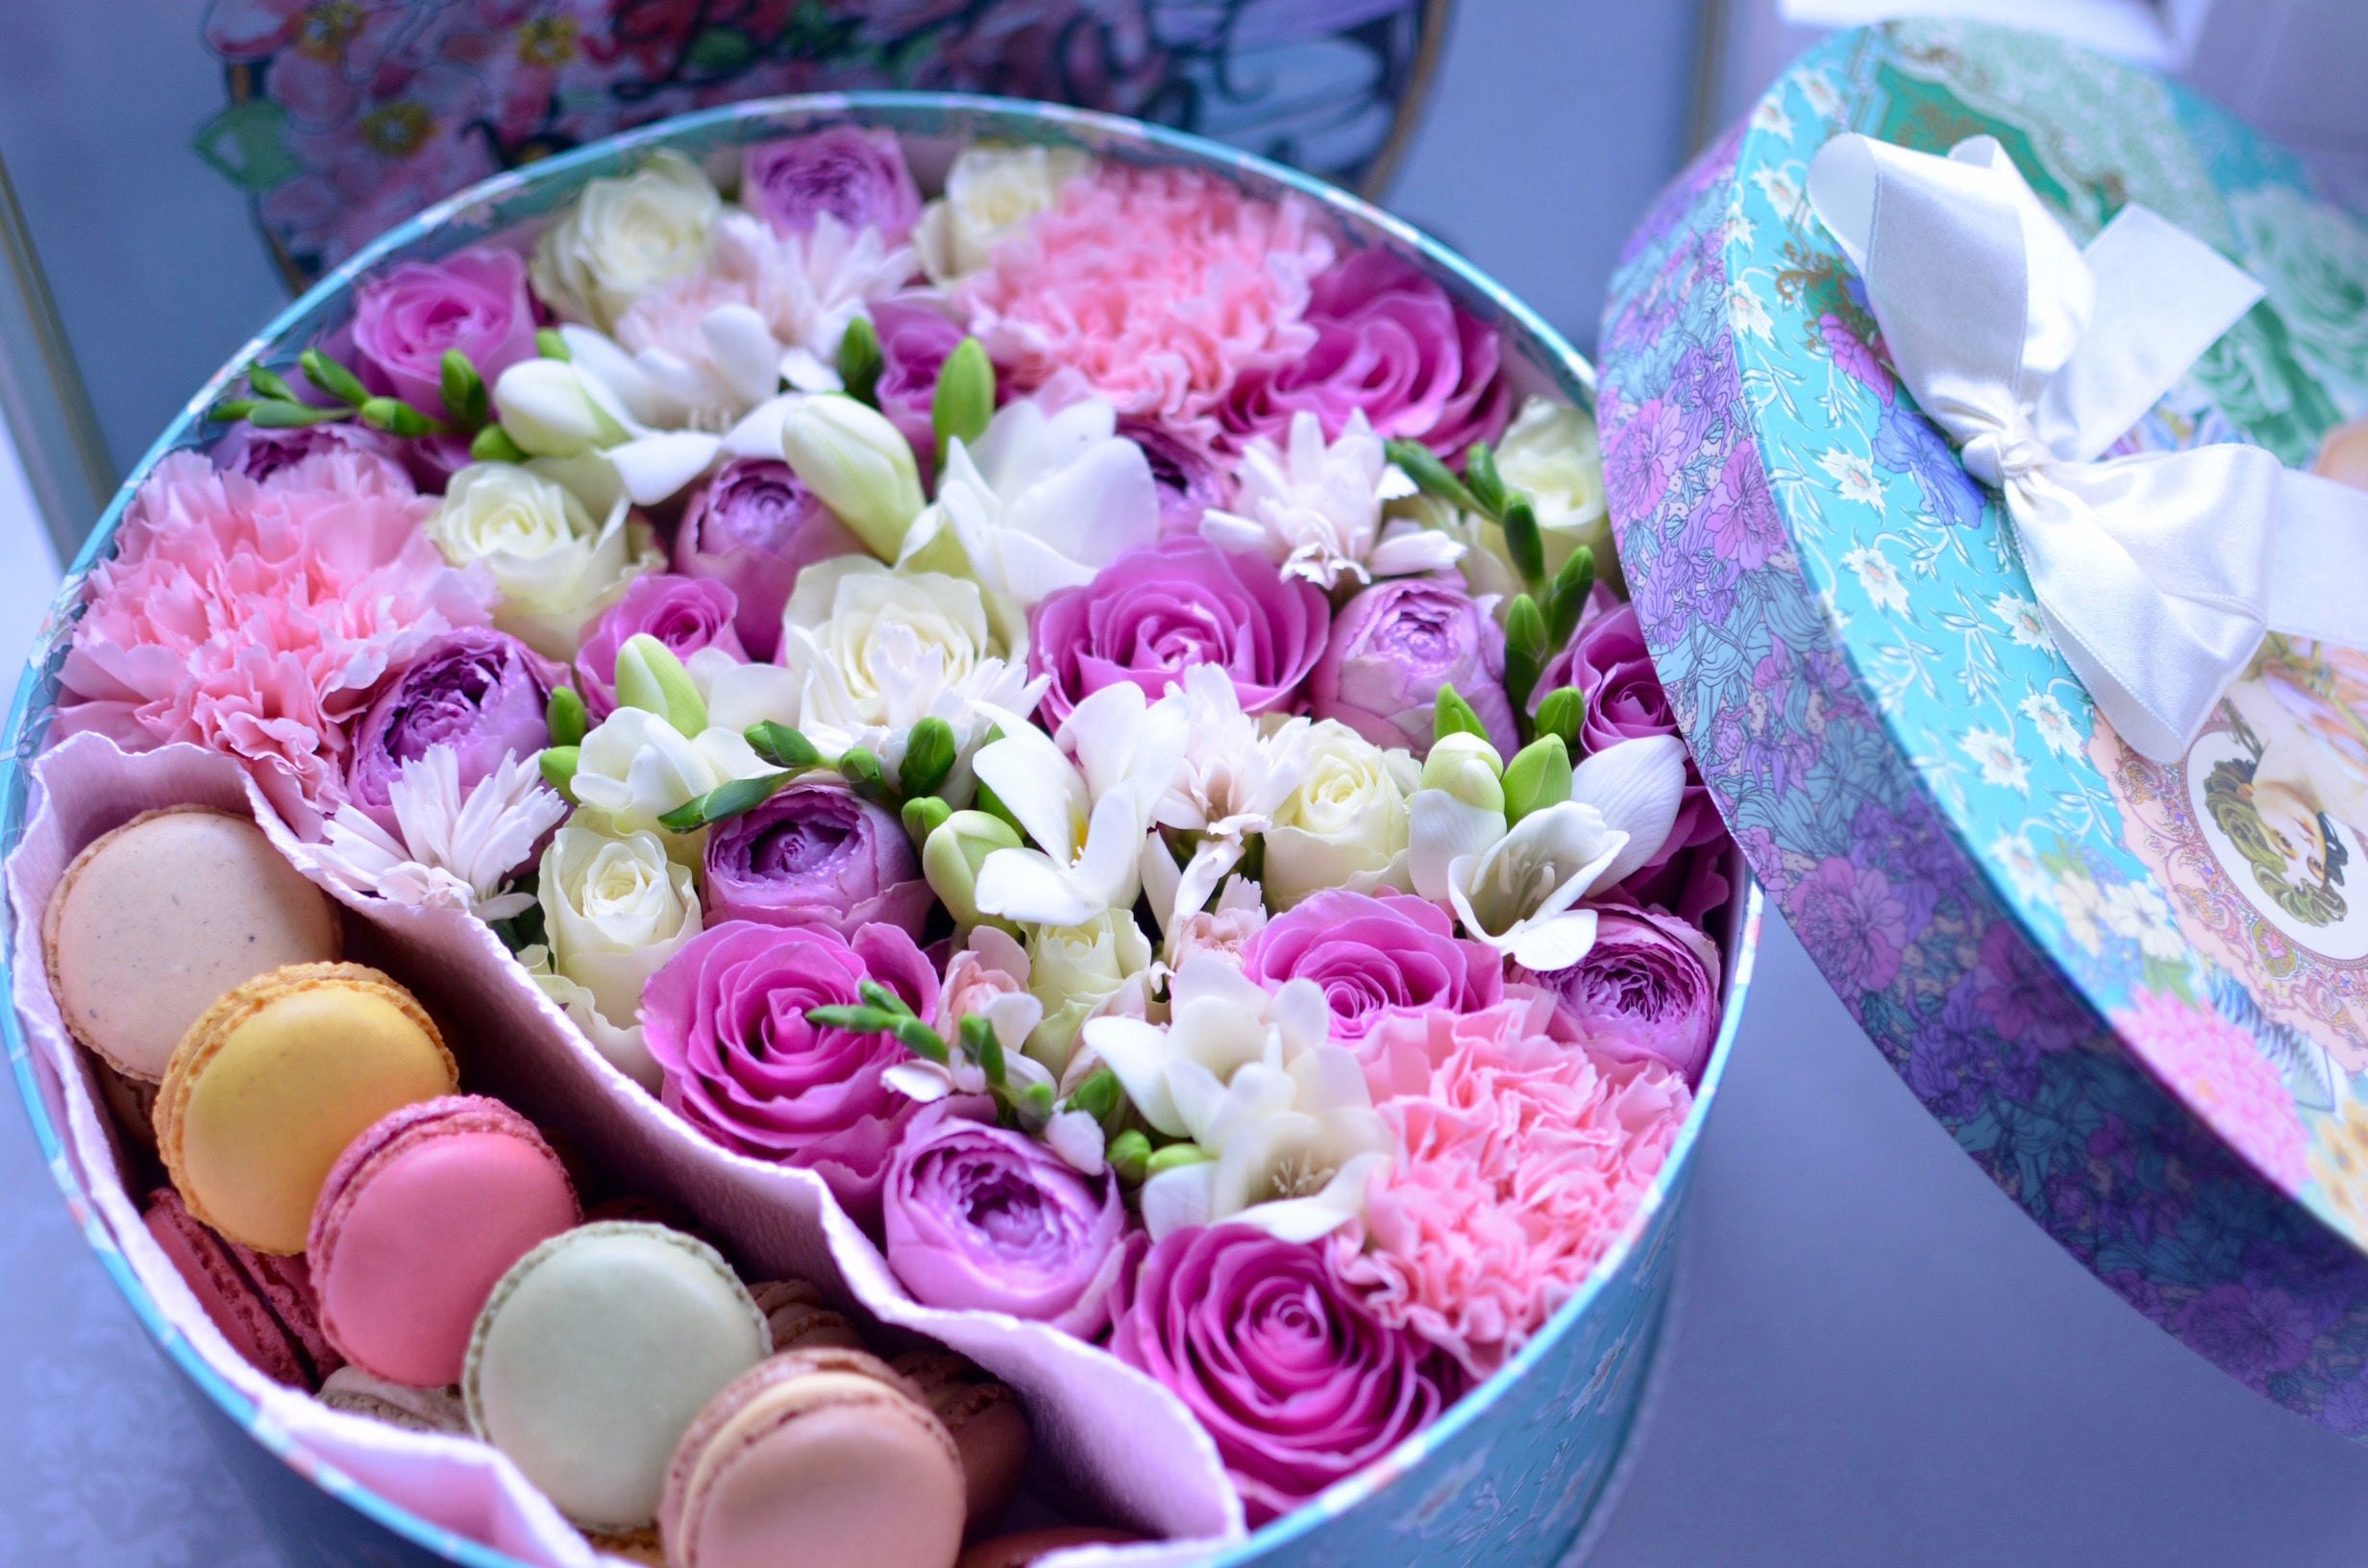 Картинка коробка с цветами. Красивые коробки с цветами. Нежные букеты в коробках. Коробка с цветами и конфетами. Коробки с цветами и сладостями.